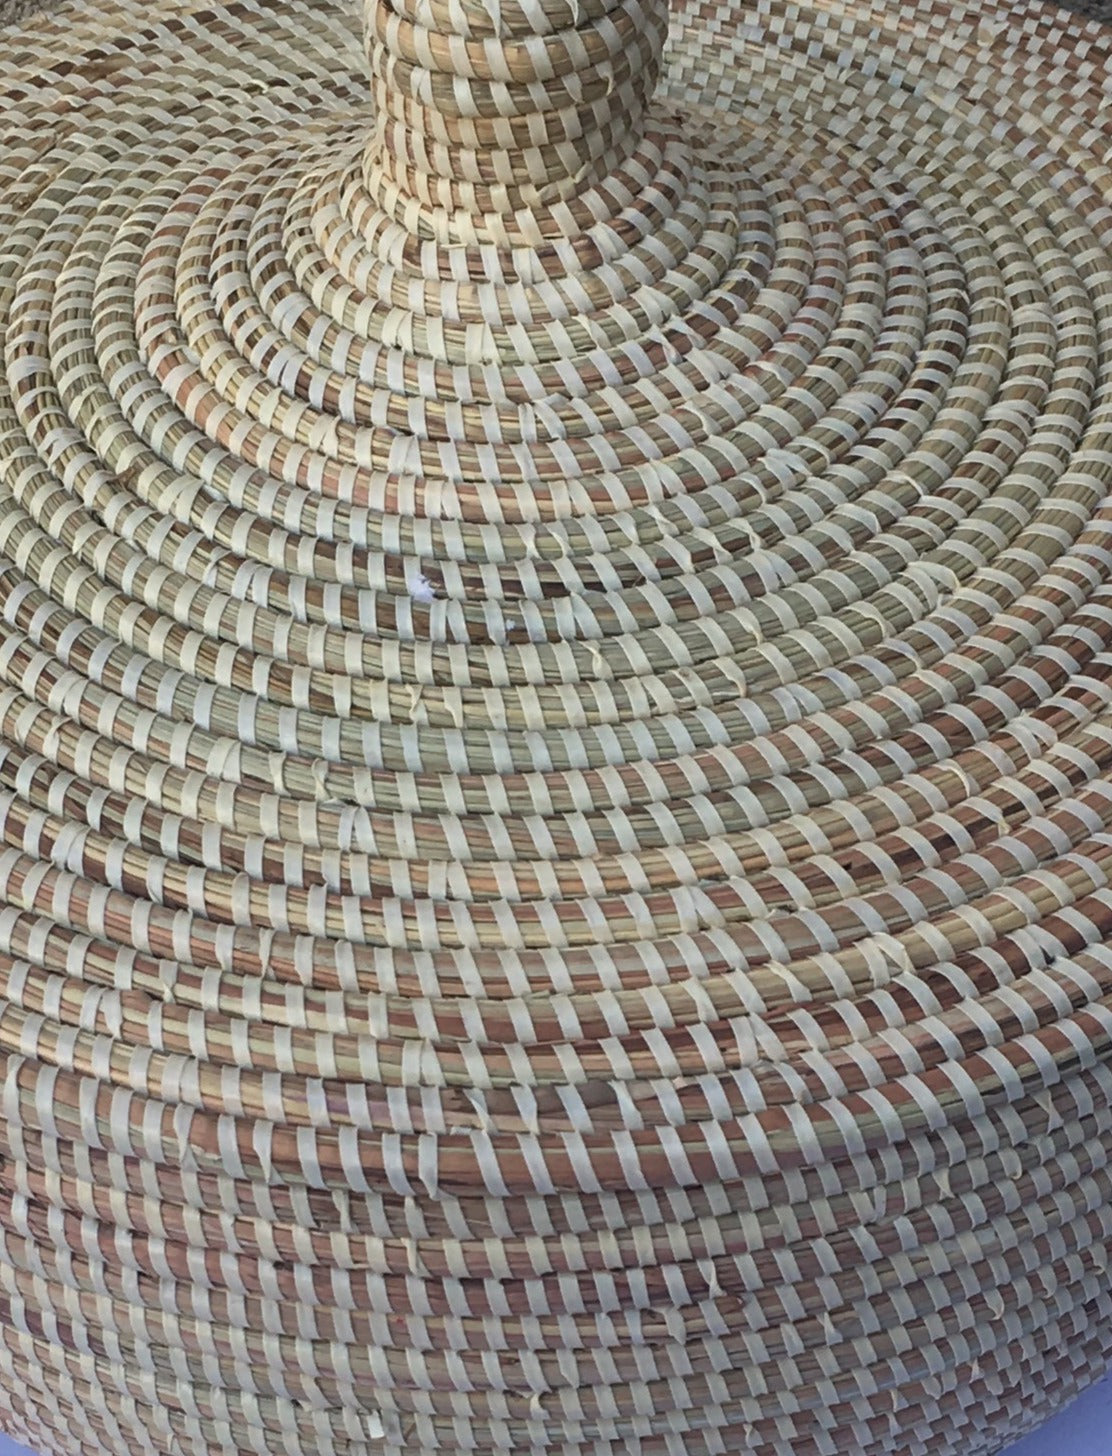 Large Senegalese basket